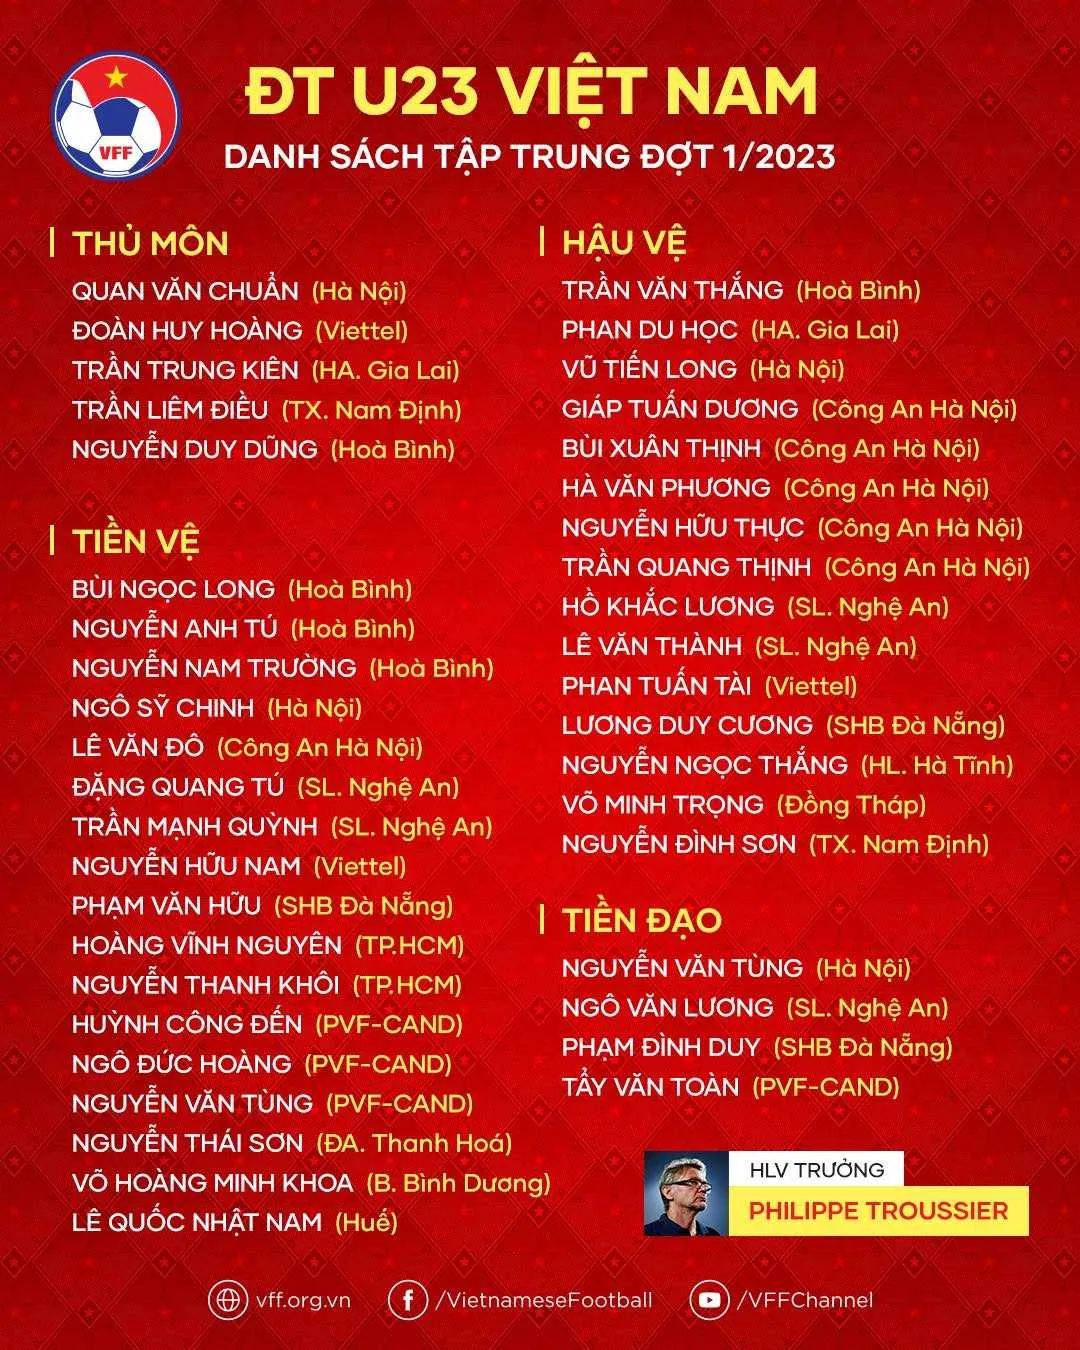 Đã có danh sách triệu tập U23 Việt Nam từ HLV Troussier